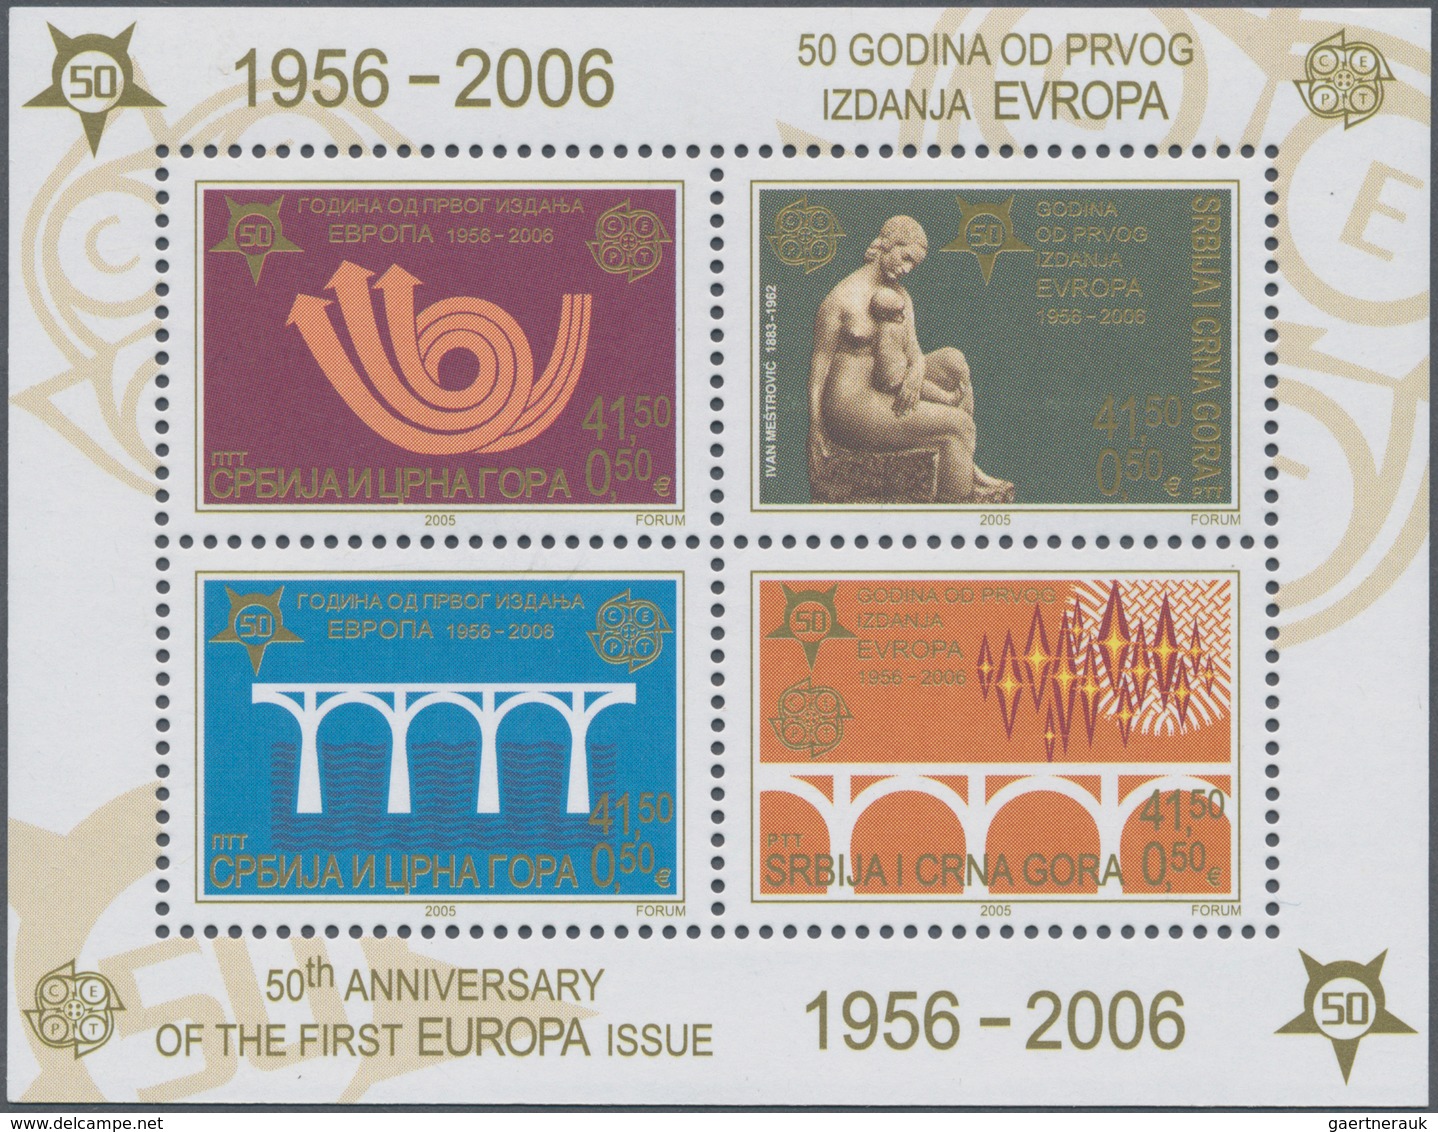 28604 Europa: 2006, "50 JAHRE EUROPAMARKEN". Posten mit den Ausgaben von 13 Ländern, postfrisch und je 1.0